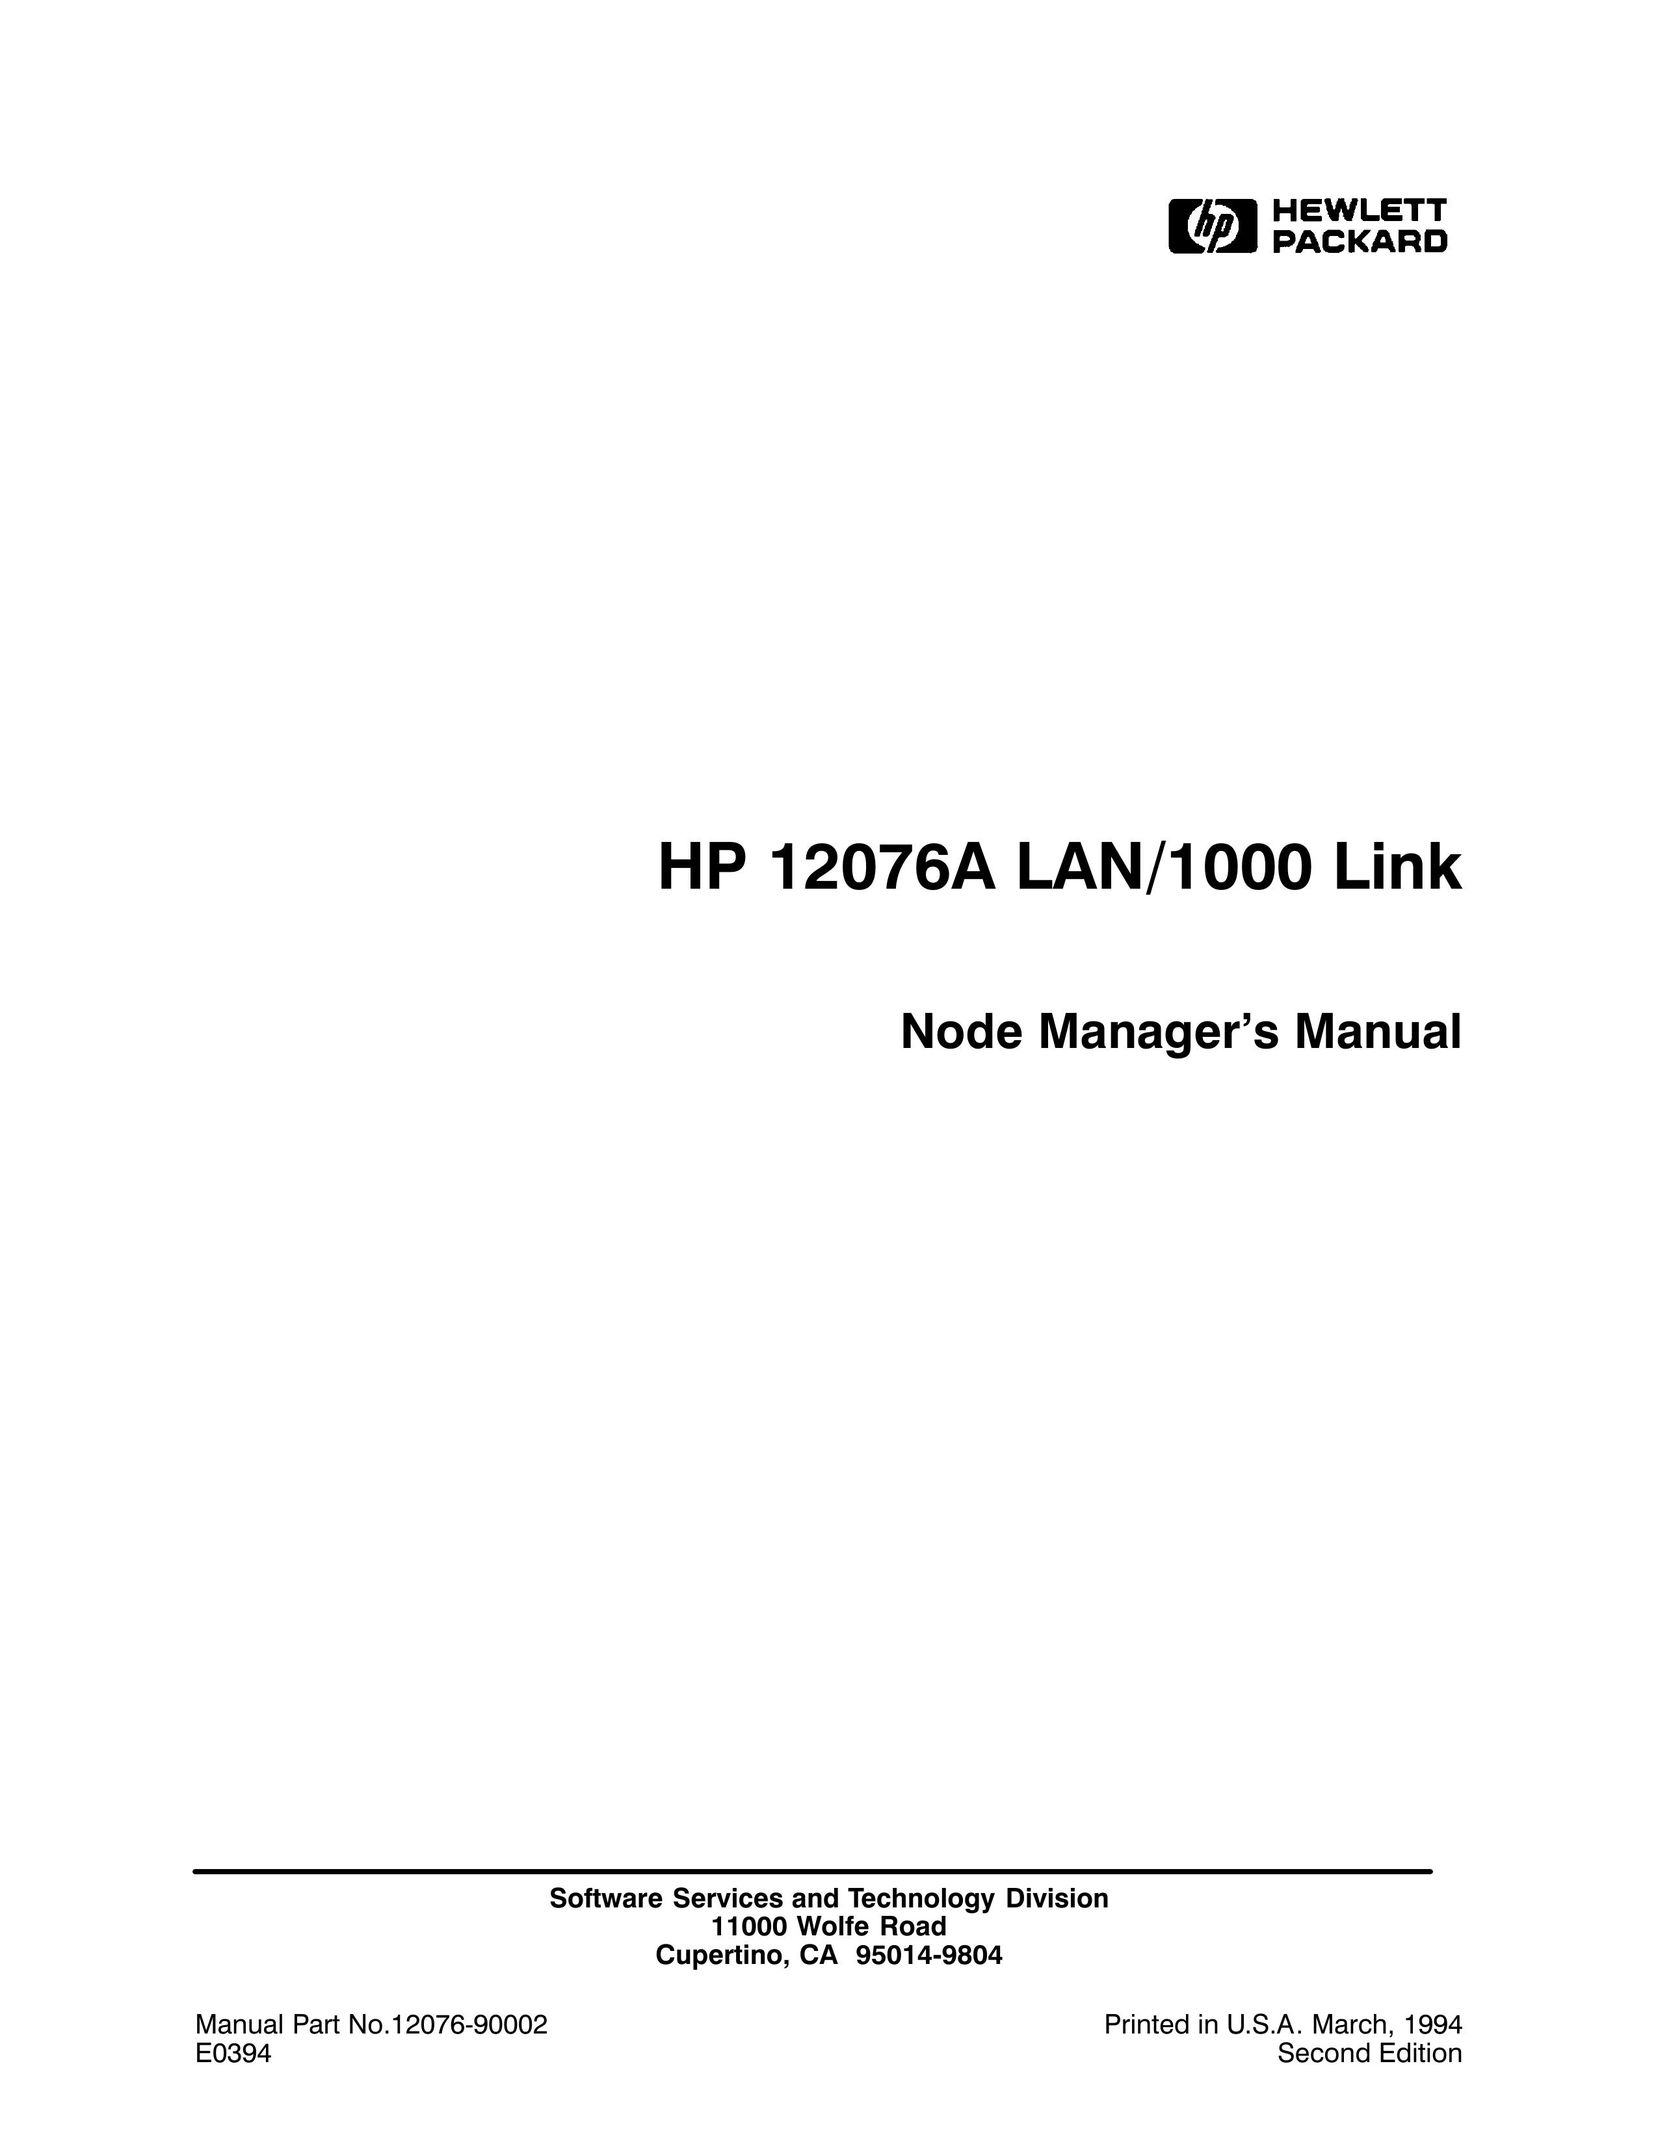 HP (Hewlett-Packard) 12076A LAN/1000 LINK Switch User Manual